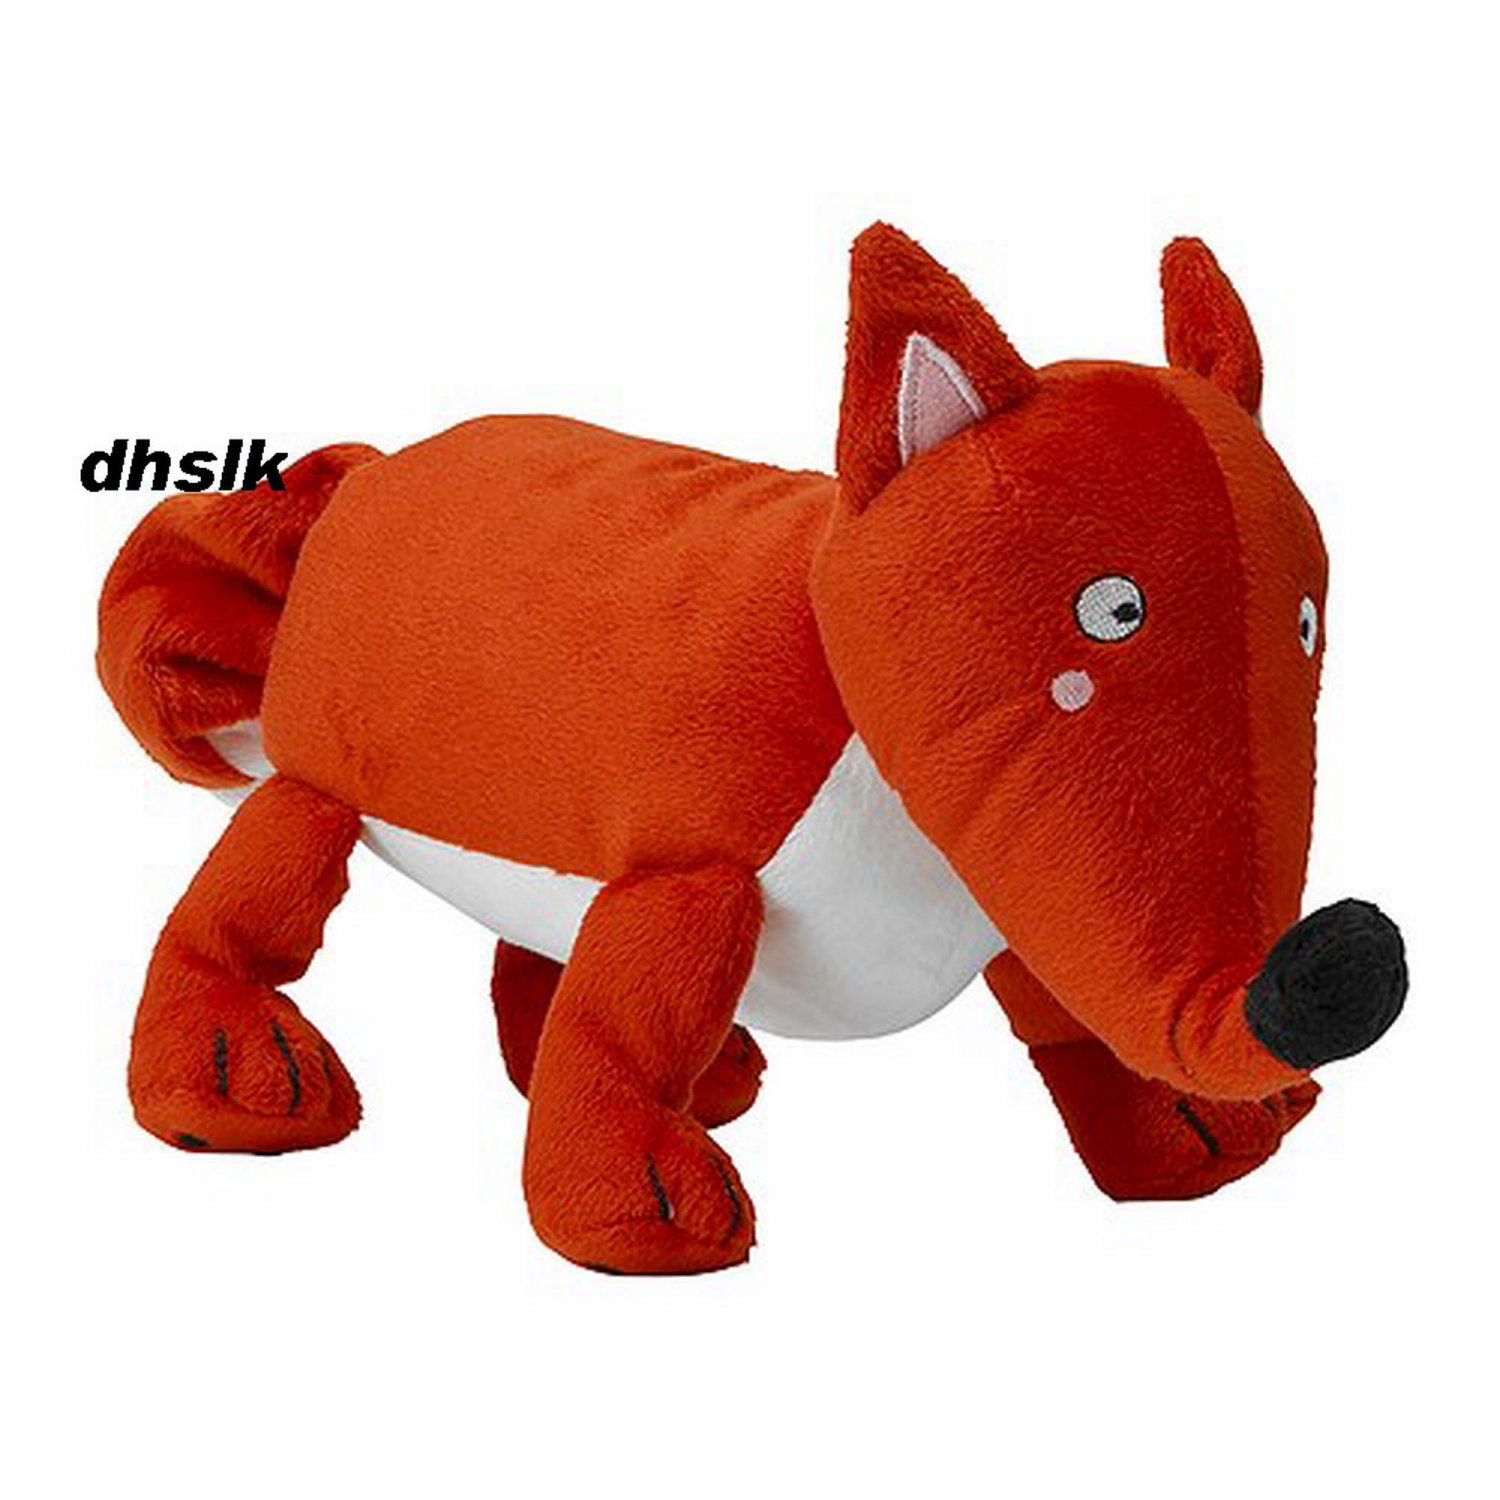 ikea fox toy